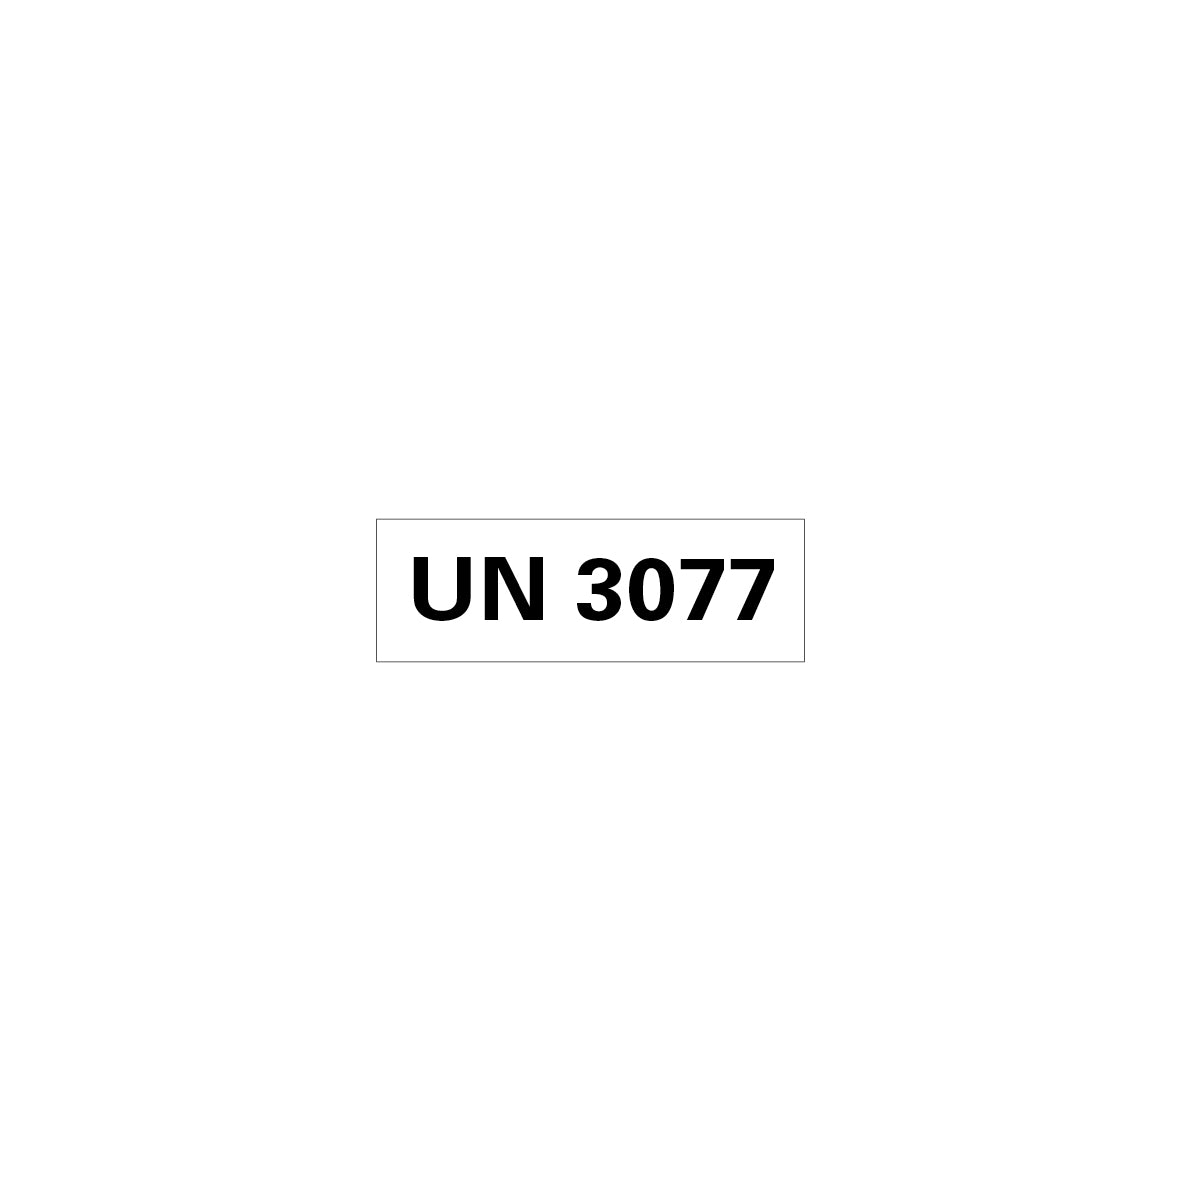 Gefahrgut UN, 5.0160.1, 150 x 50 mm, Stk., UN 3077 (umweltgefährlicher Stoff, fest), auf Bogen, VE 10 Stk.